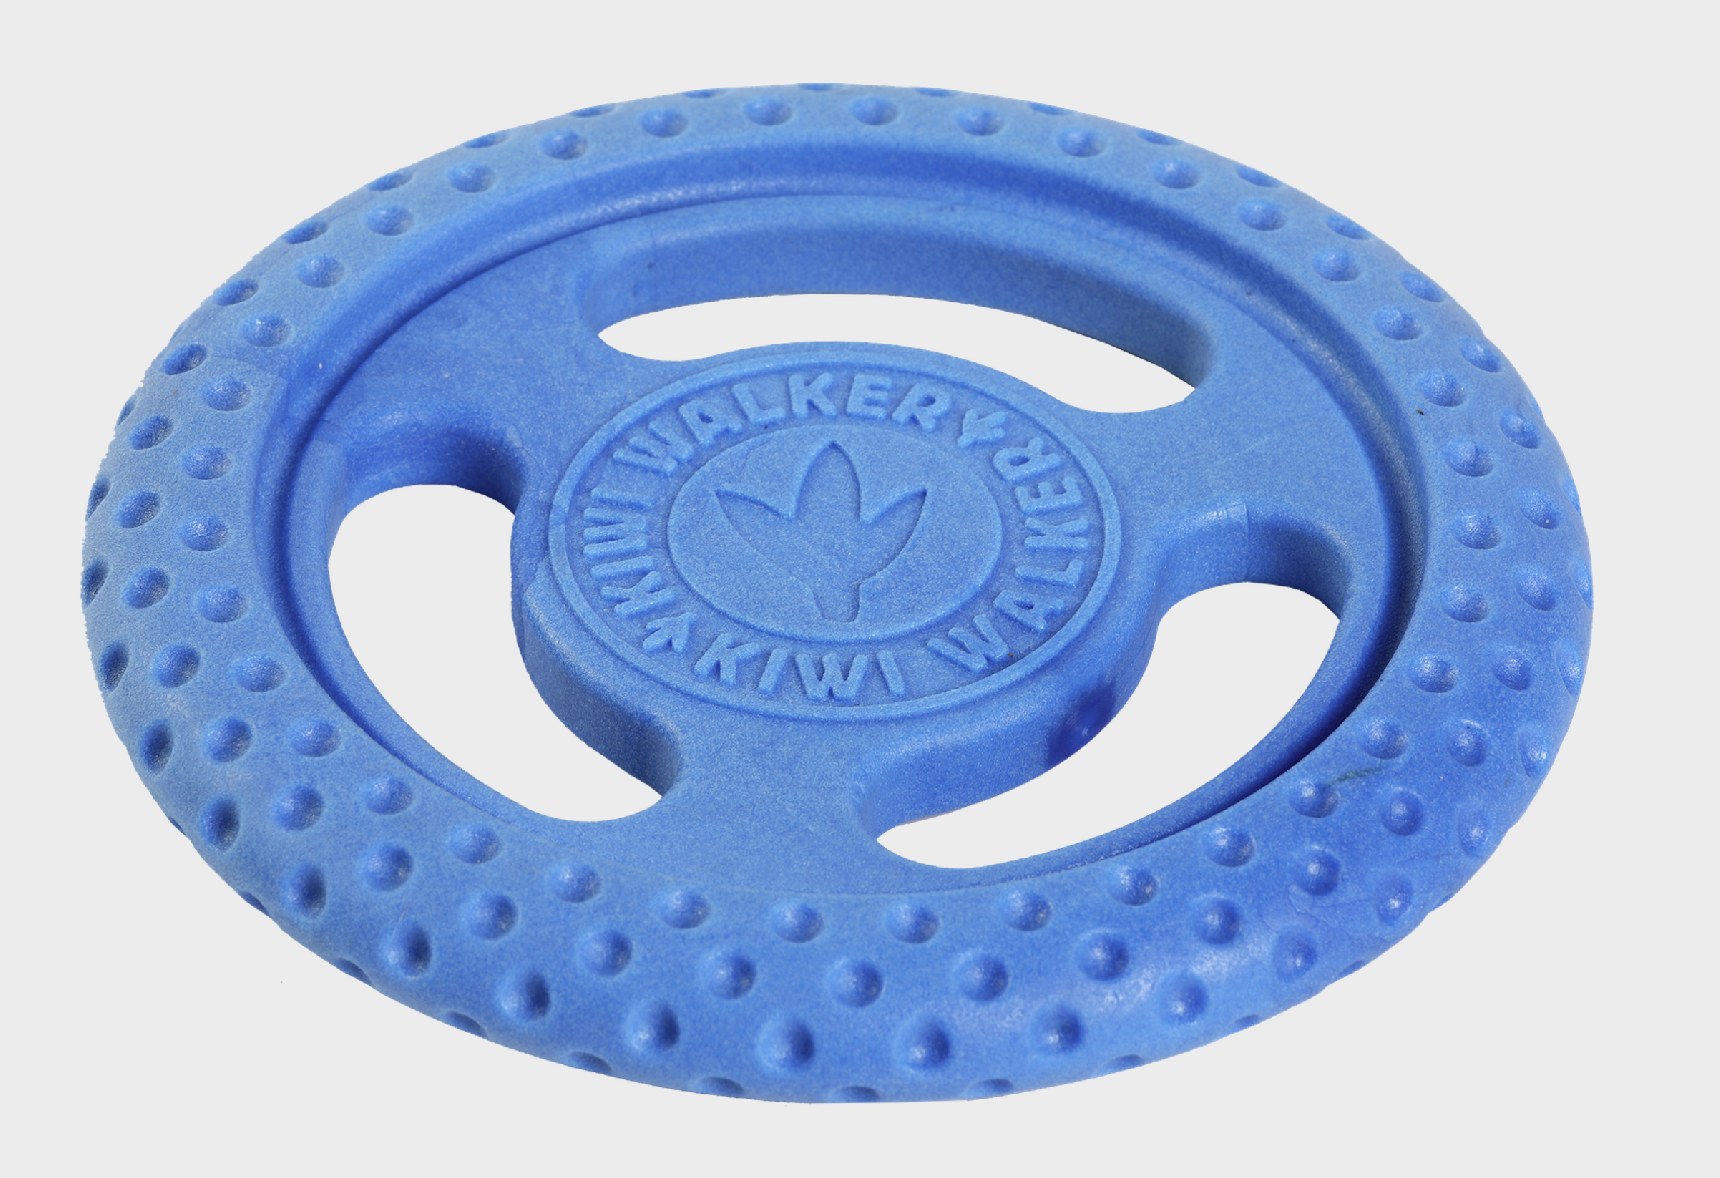 Hračka Kiwi Walker házecí/plovací frisbee z TPR gumy MAXI 22 cm Barva: Modrá